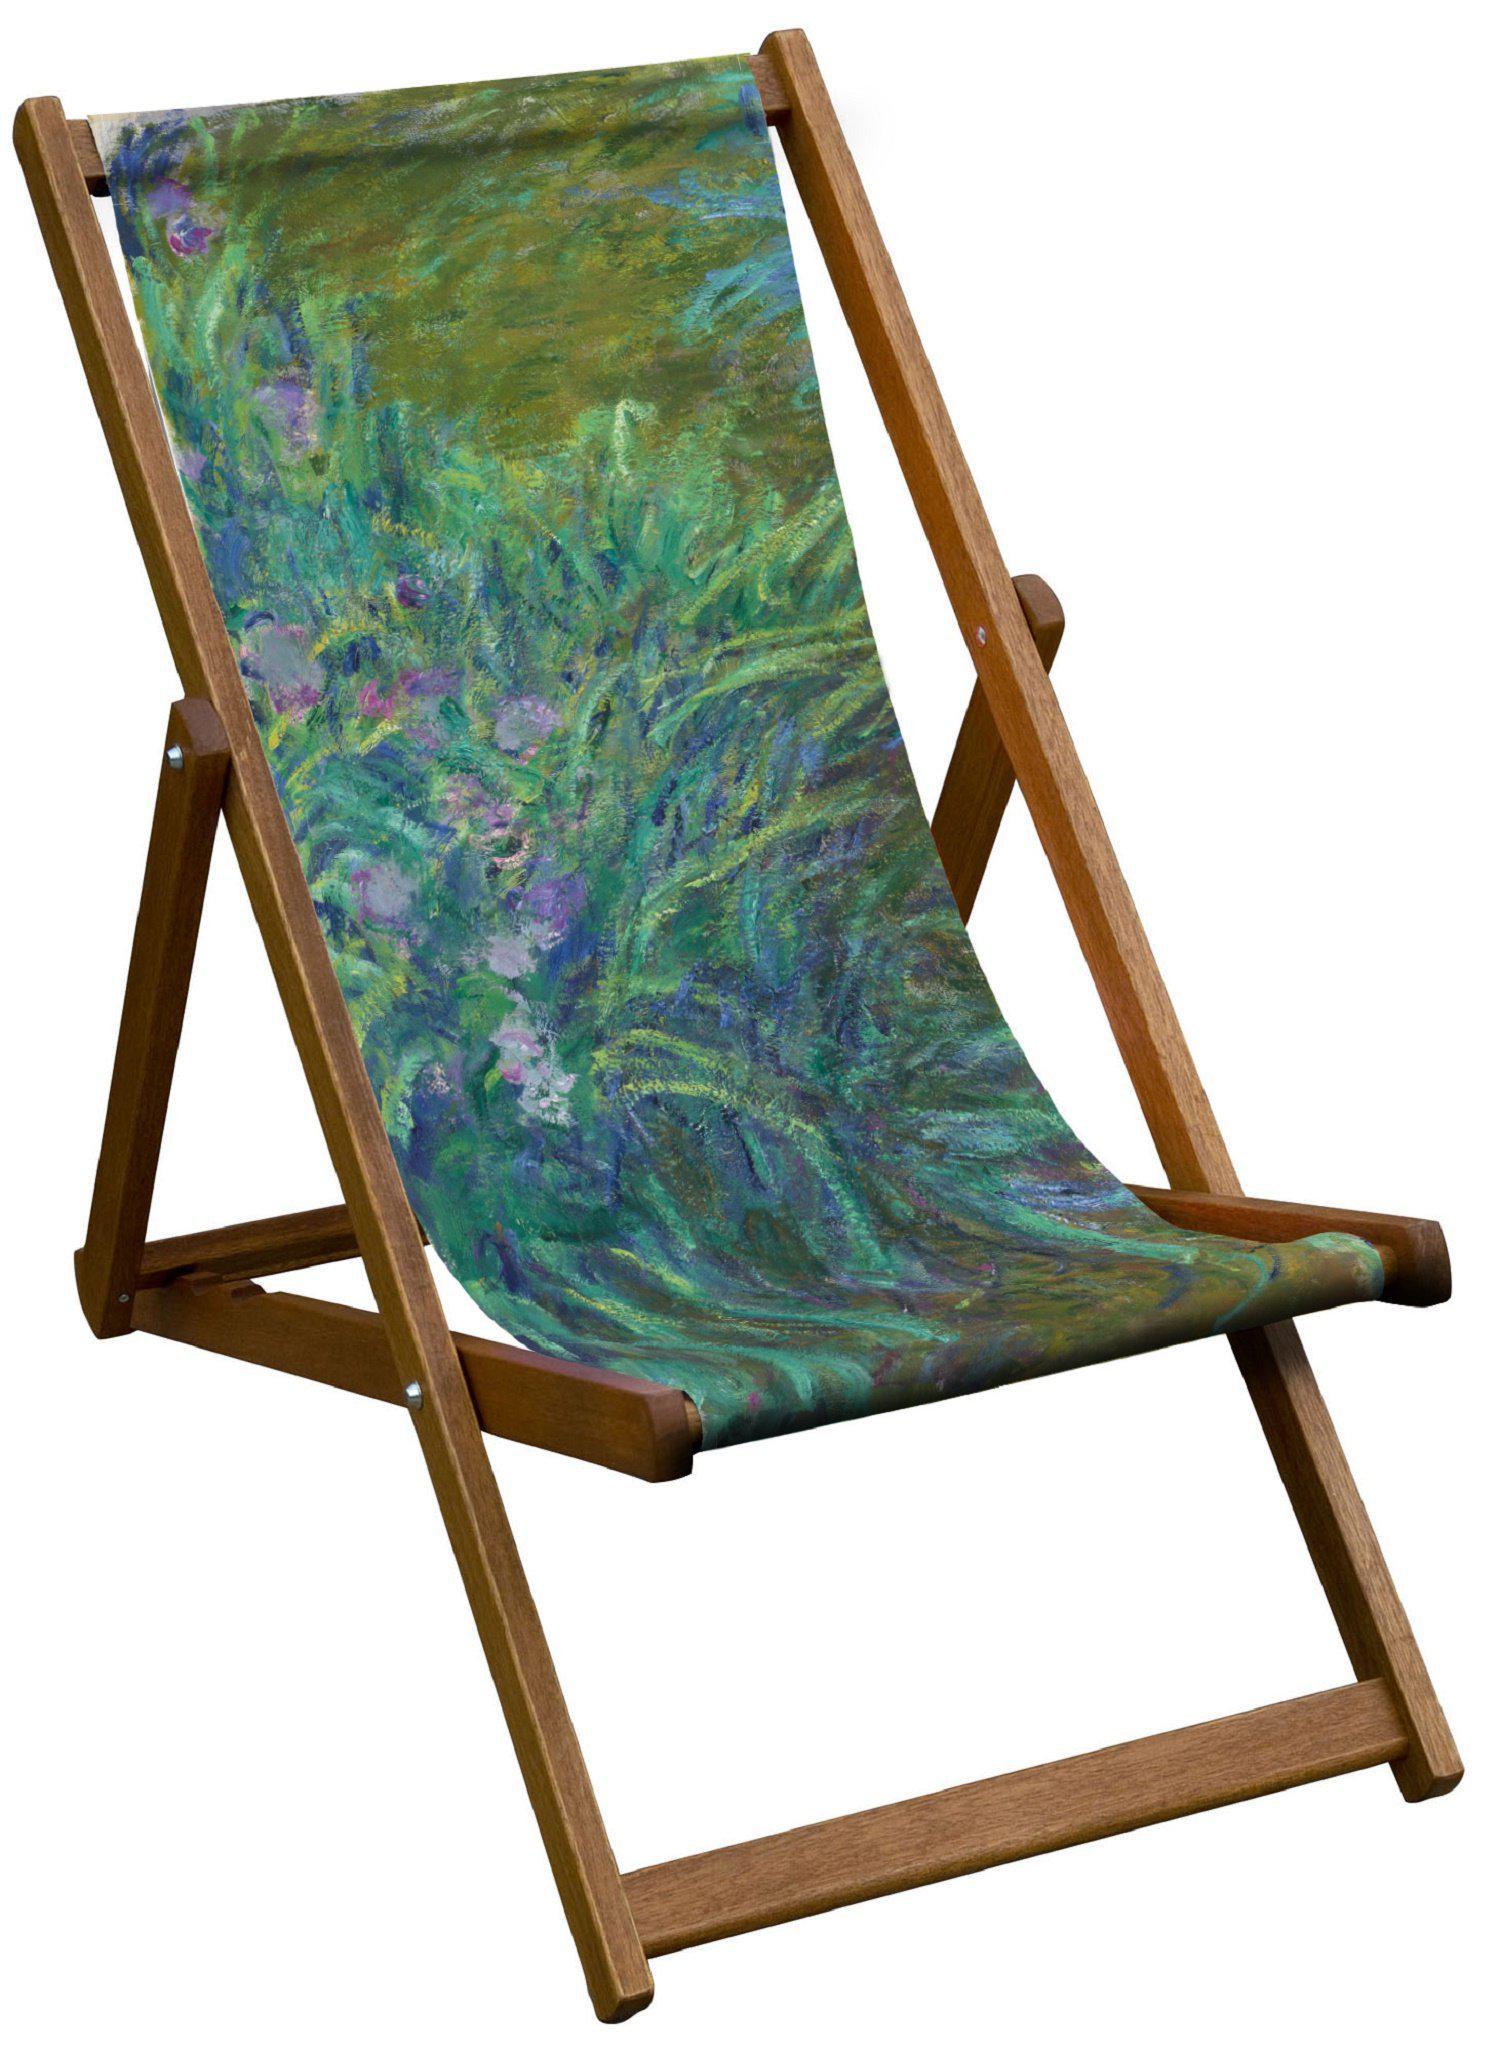 Irises - Claude Monet - National Gallery Deckchair